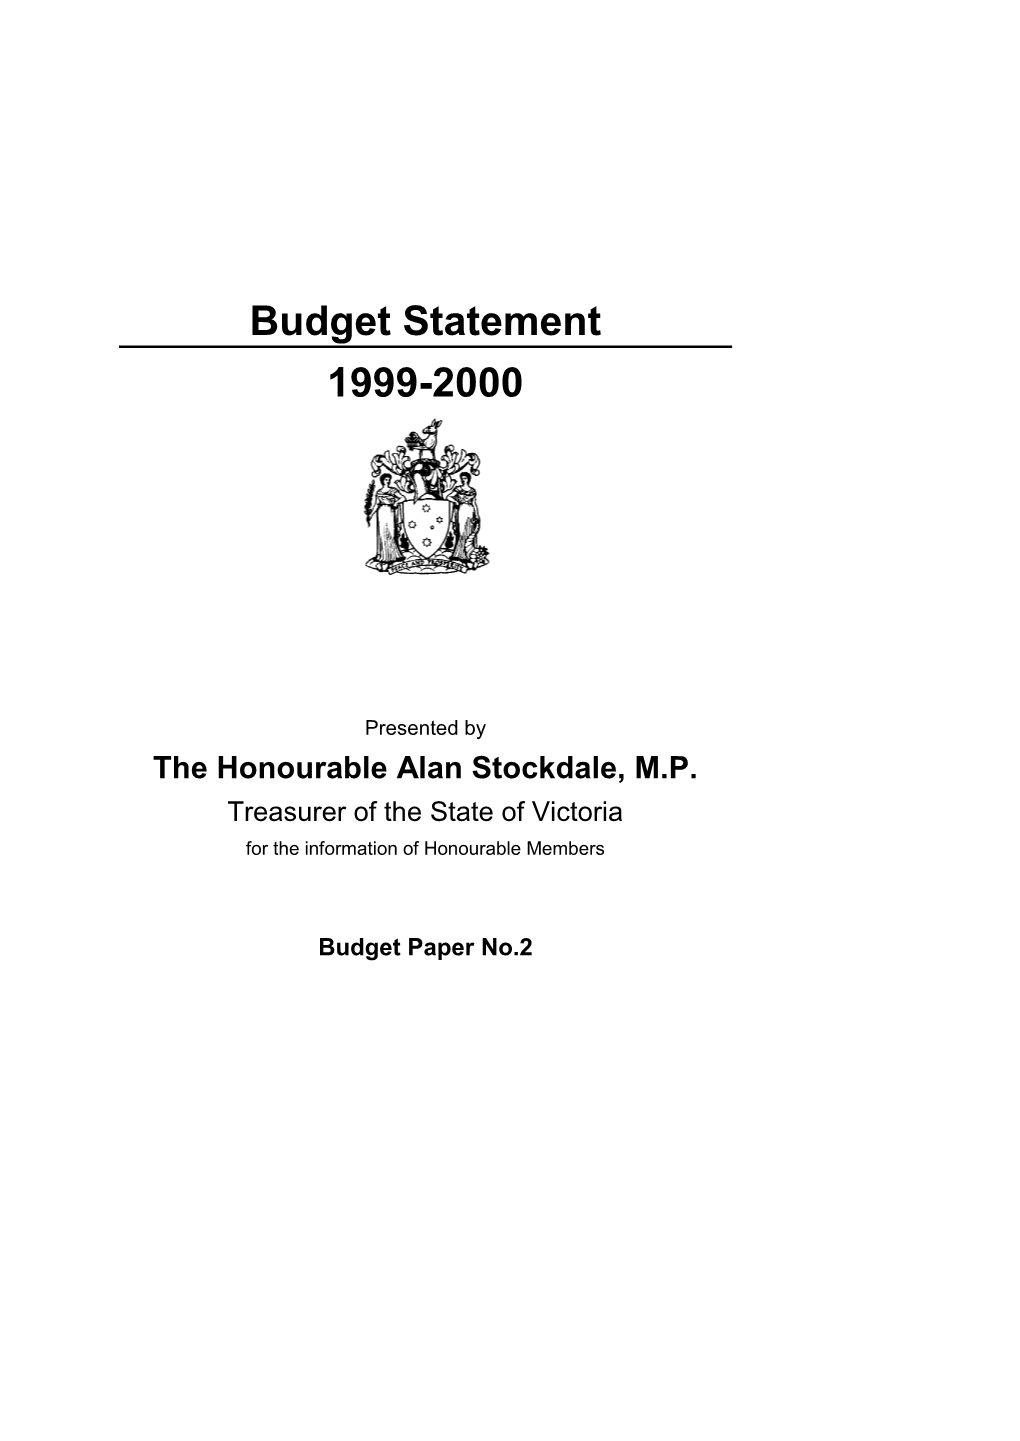 Budget Statement 1999-2000